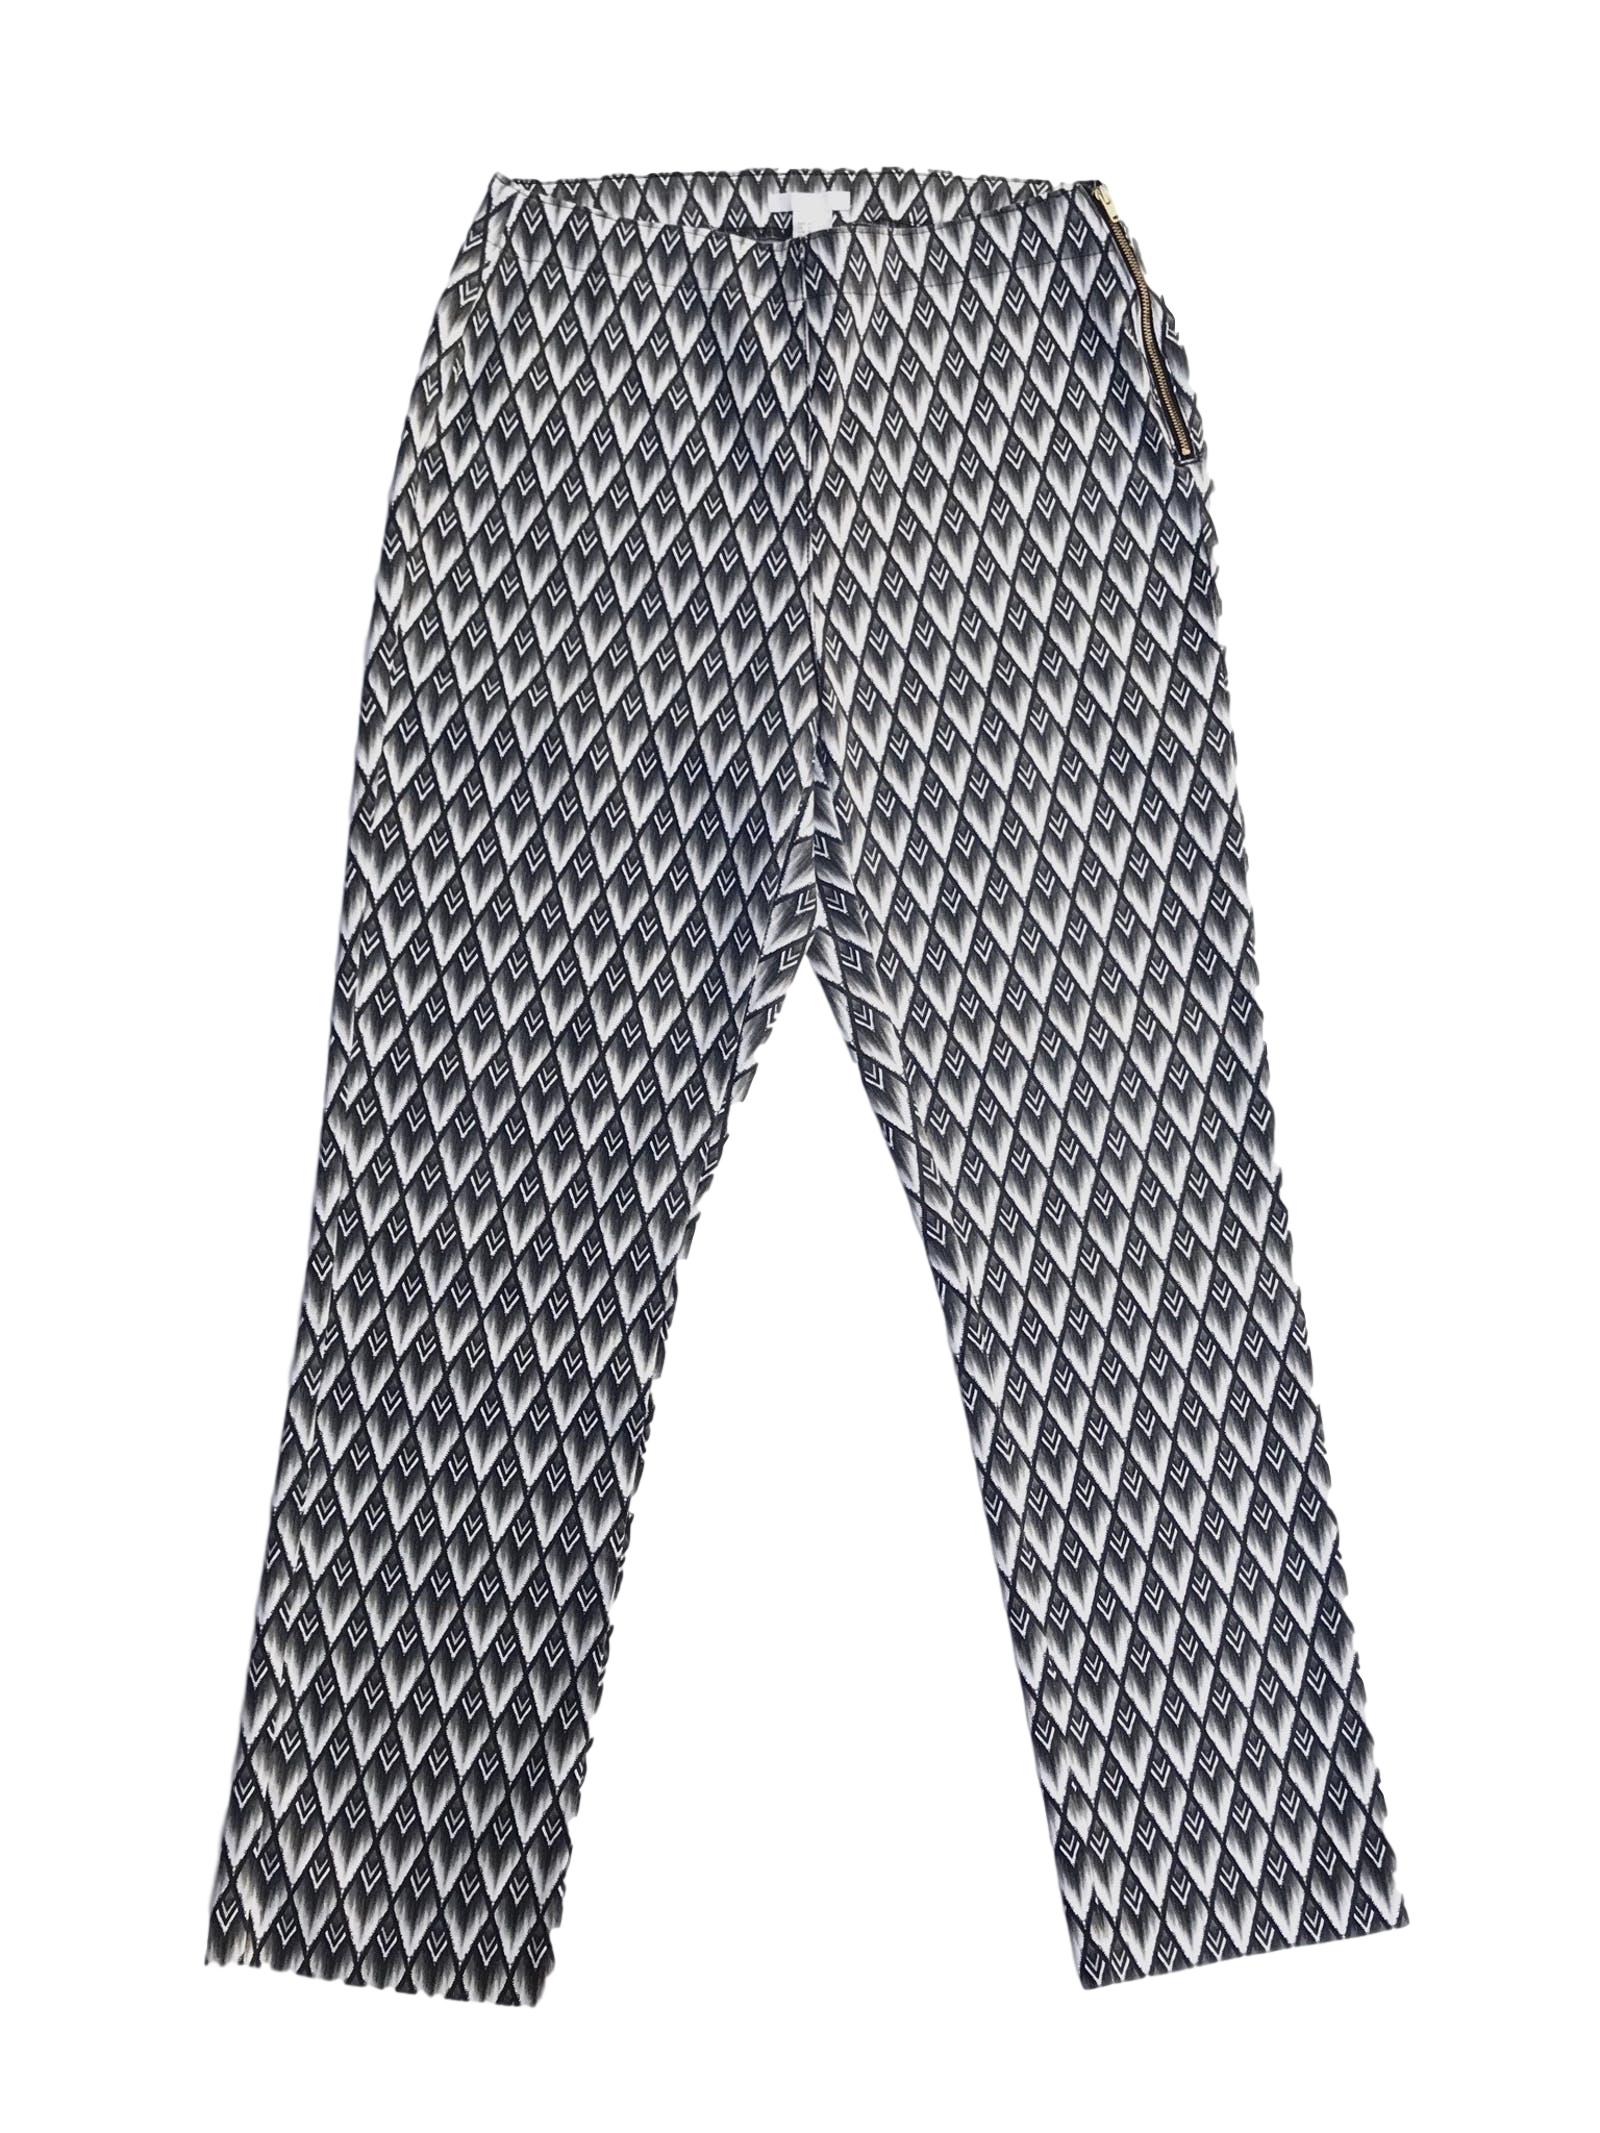 Pantalón H&M estampado barroco en tonos grises y cremas, ligeramente stretch con cierre lateral, corte pitillo 
Talla 32